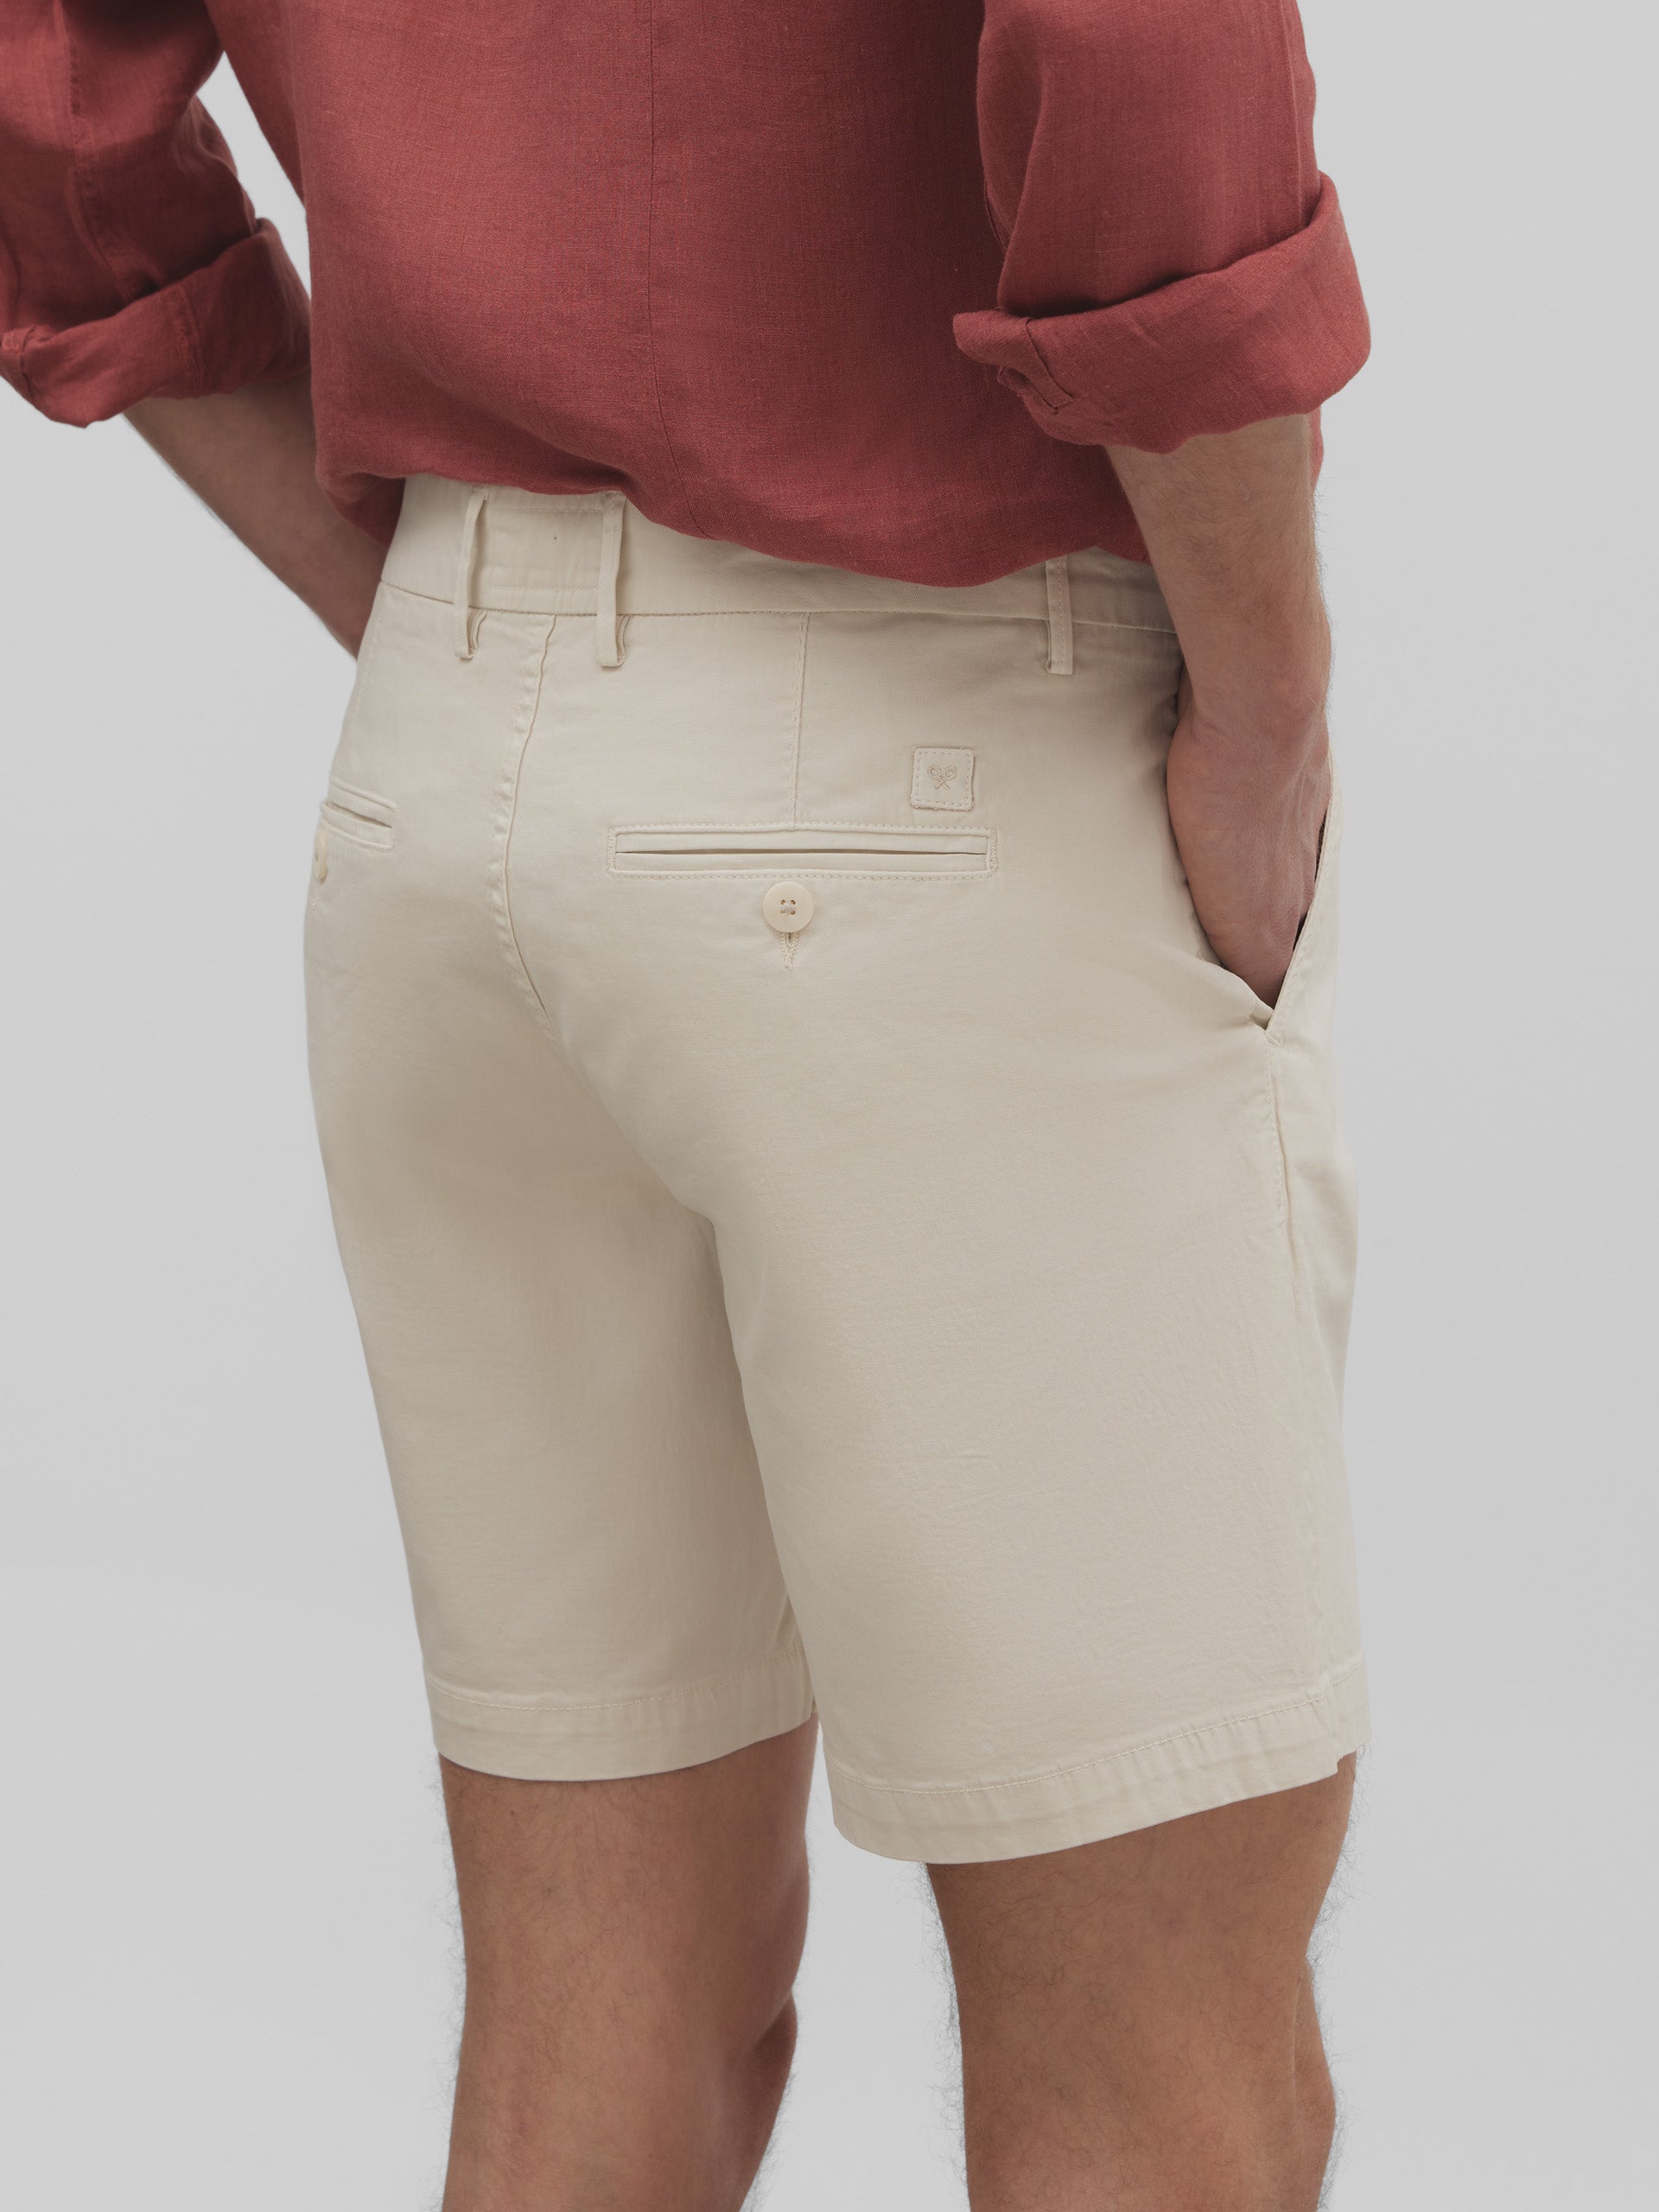 Classic Bermuda shorts in light beige